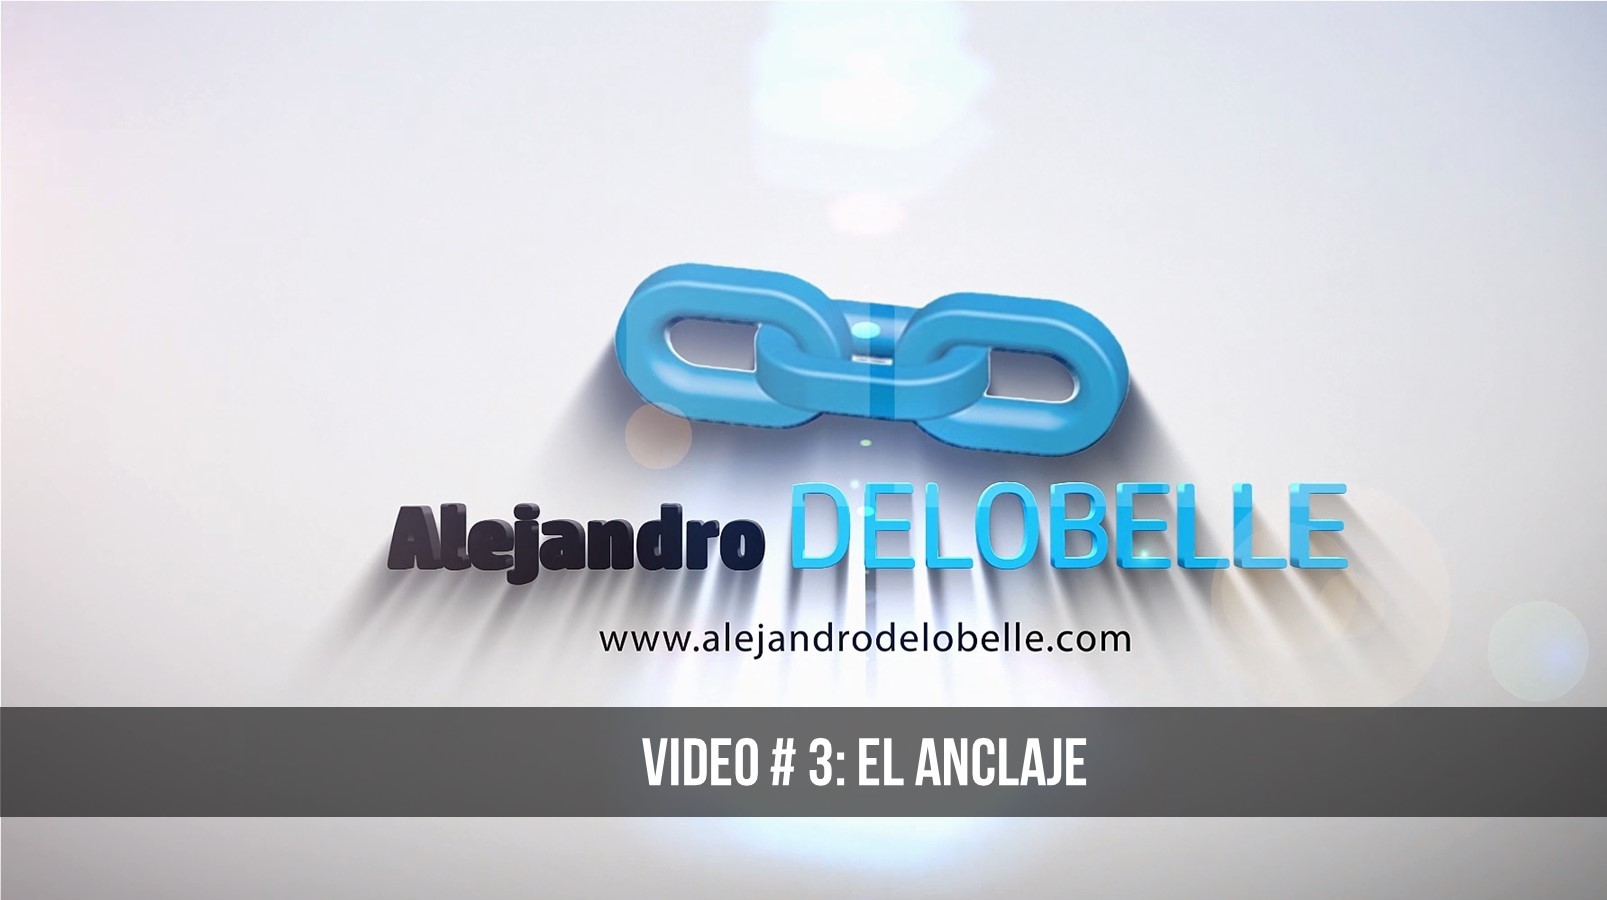 El Anclaje | Video 3 Delobelle A